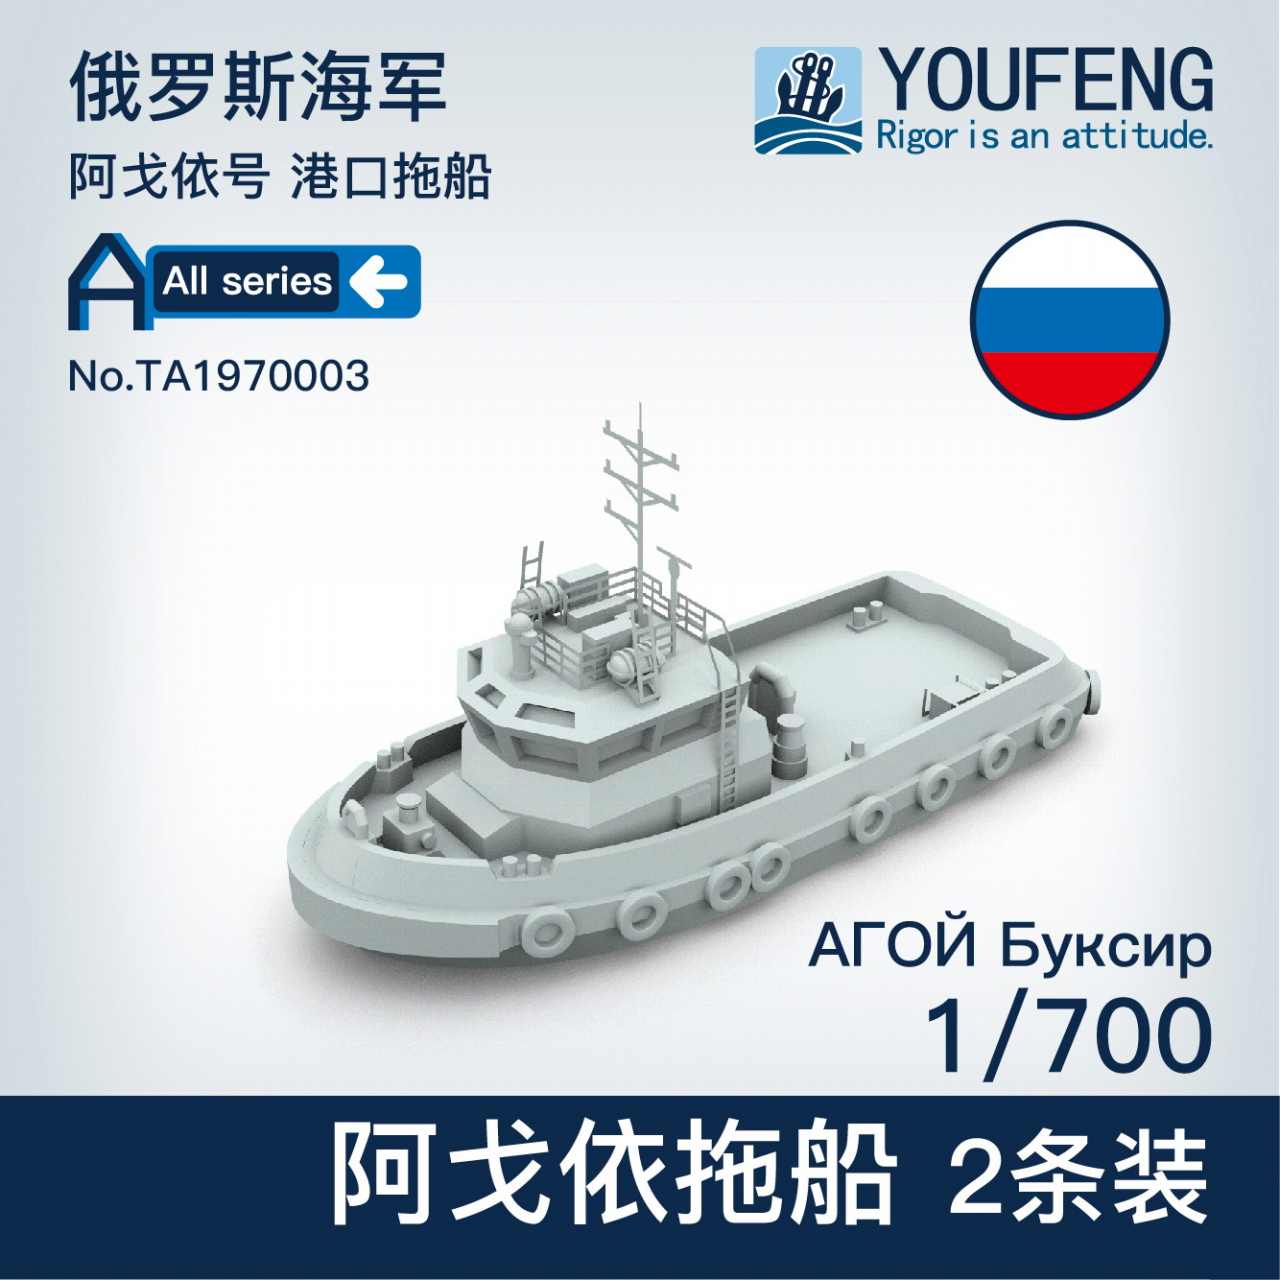 【新製品】TA1970003 ロシア海軍 アゴイ タグボート